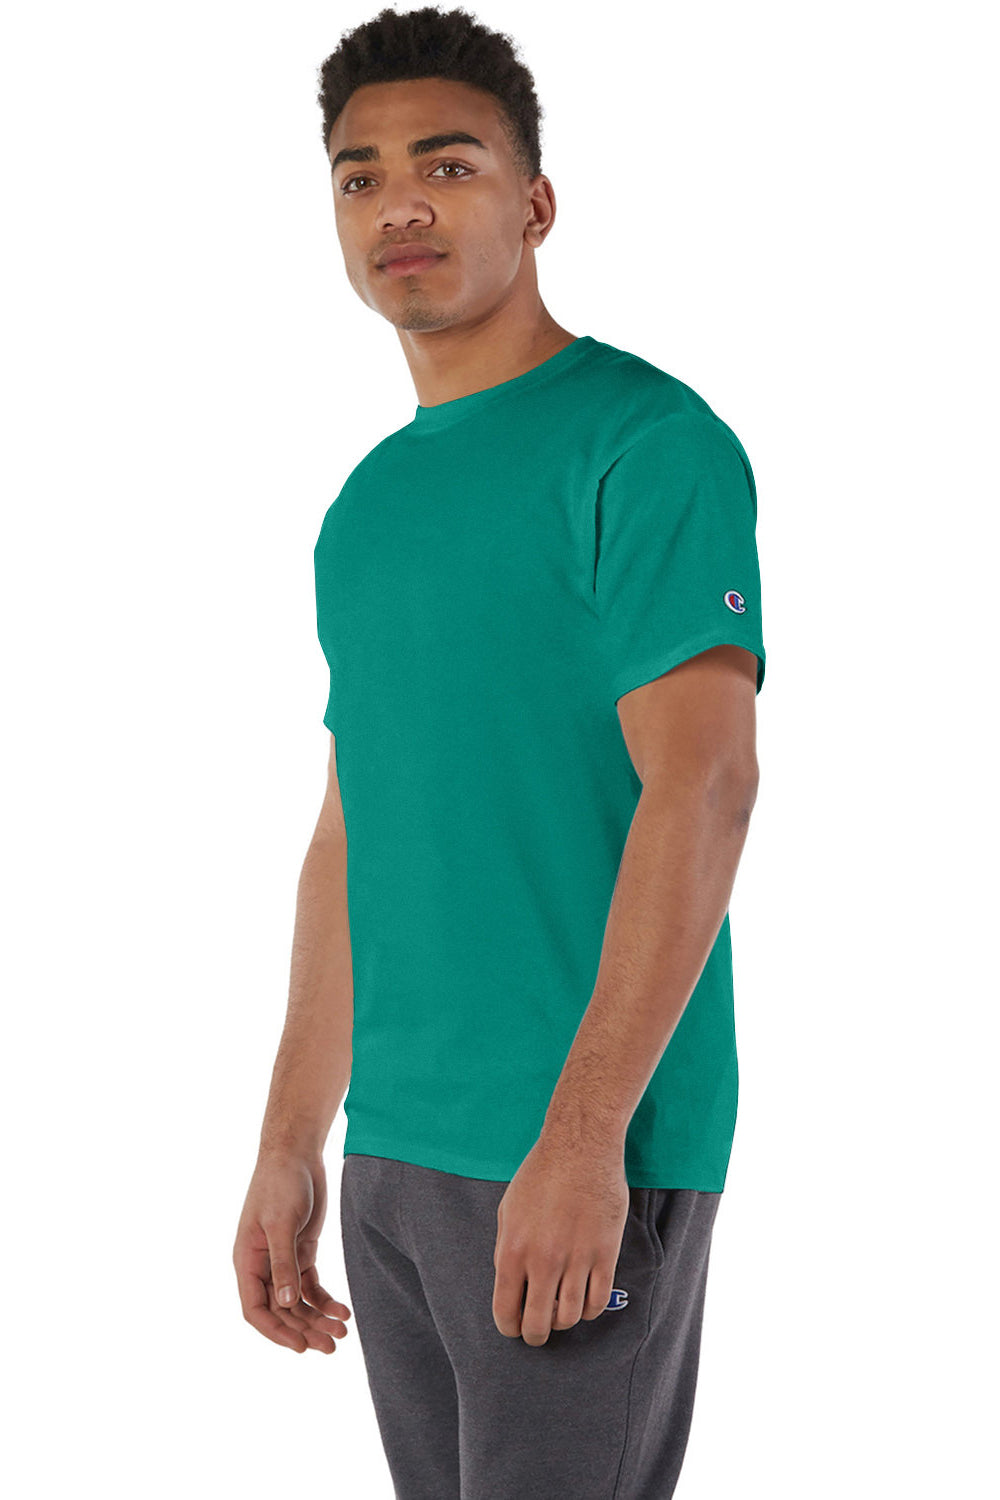 Champion T425/T525C Mens Short Sleeve Crewneck T-Shirt Emerald Green 3Q